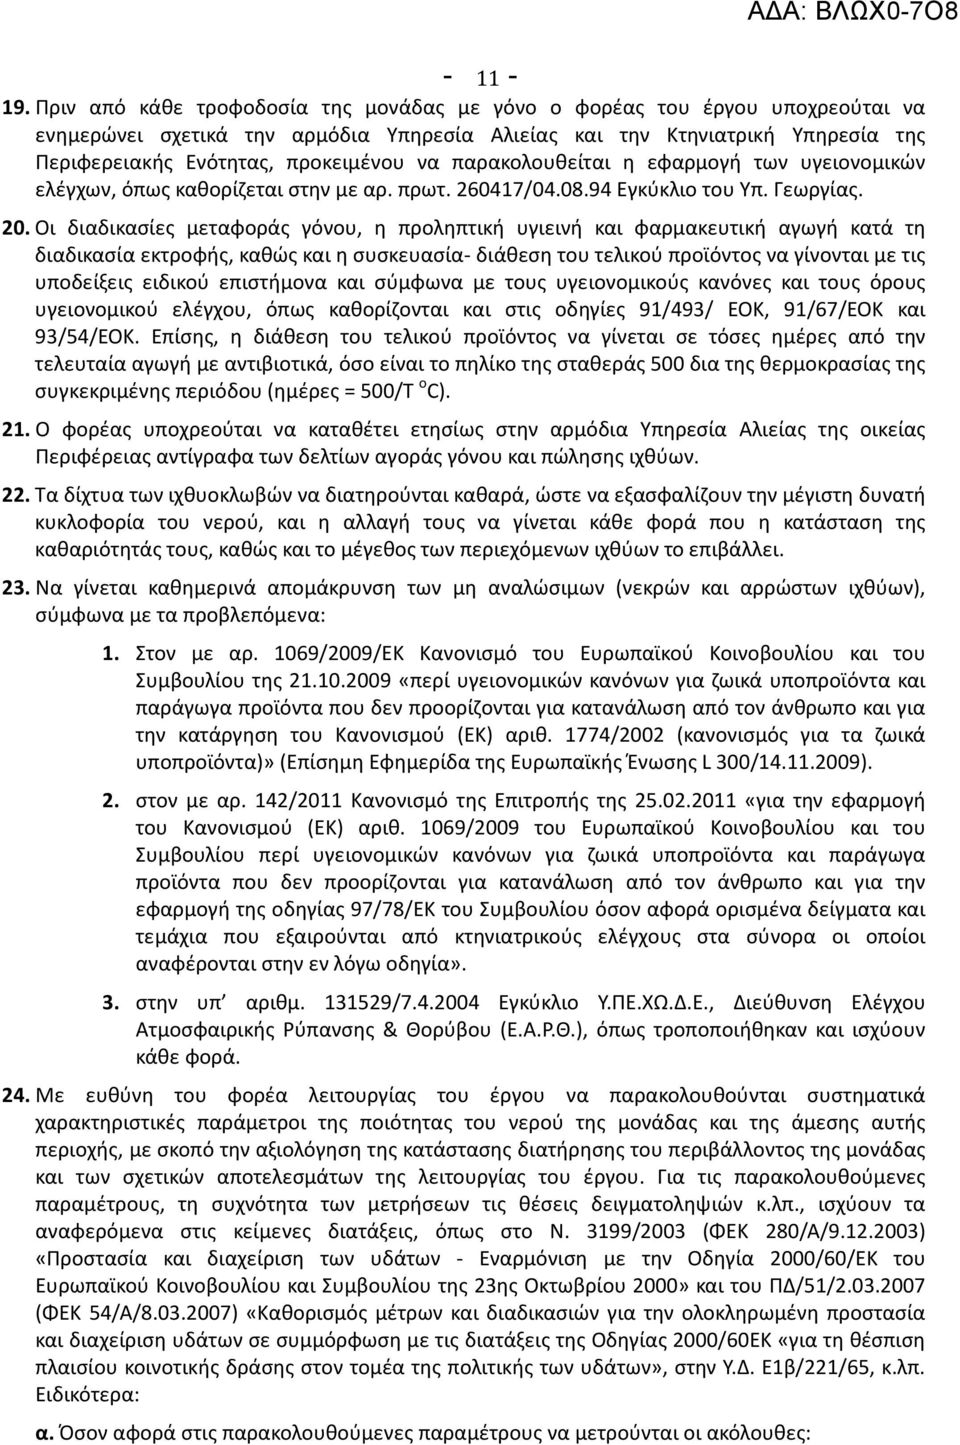 παρακολουθείται η εφαρμογή των υγειονομικών ελέγχων, όπως καθορίζεται στην με αρ. πρωτ. 260417/04.08.94 Εγκύκλιο του Υπ. Γεωργίας. 20.